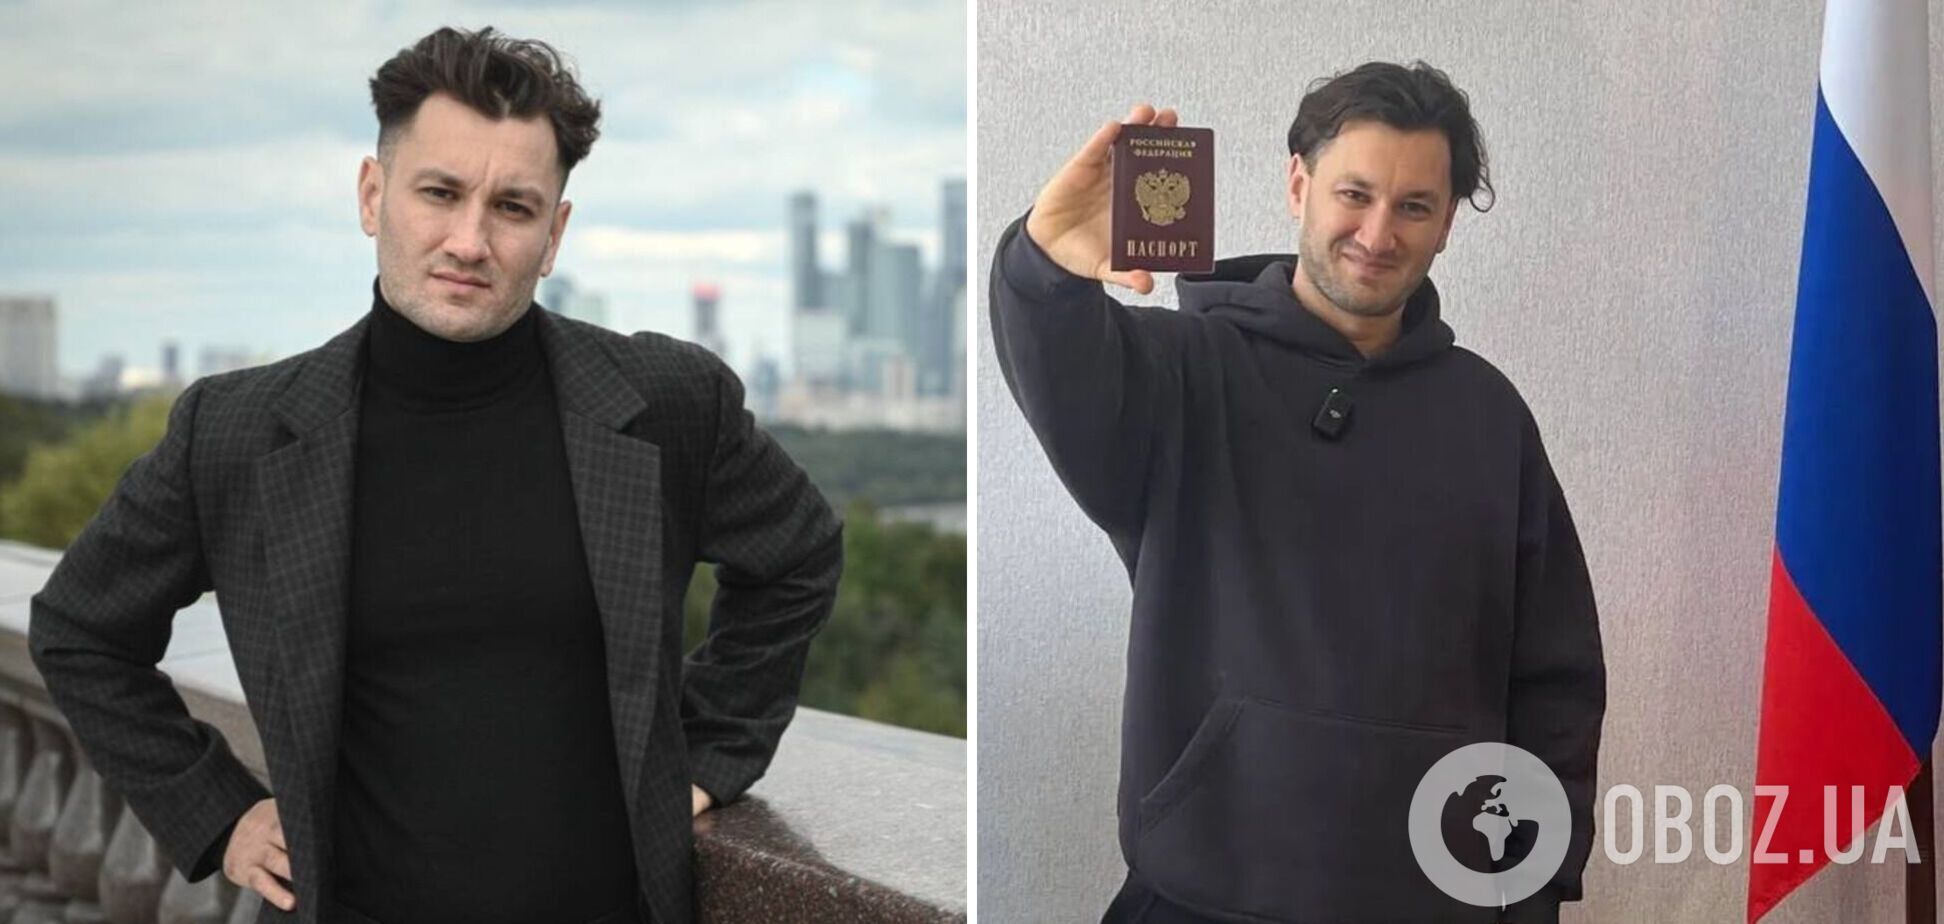 Юрий Бардаш унизил Родину: украинский паспорт так же не нужен, как Украина, но сжигать его не буду